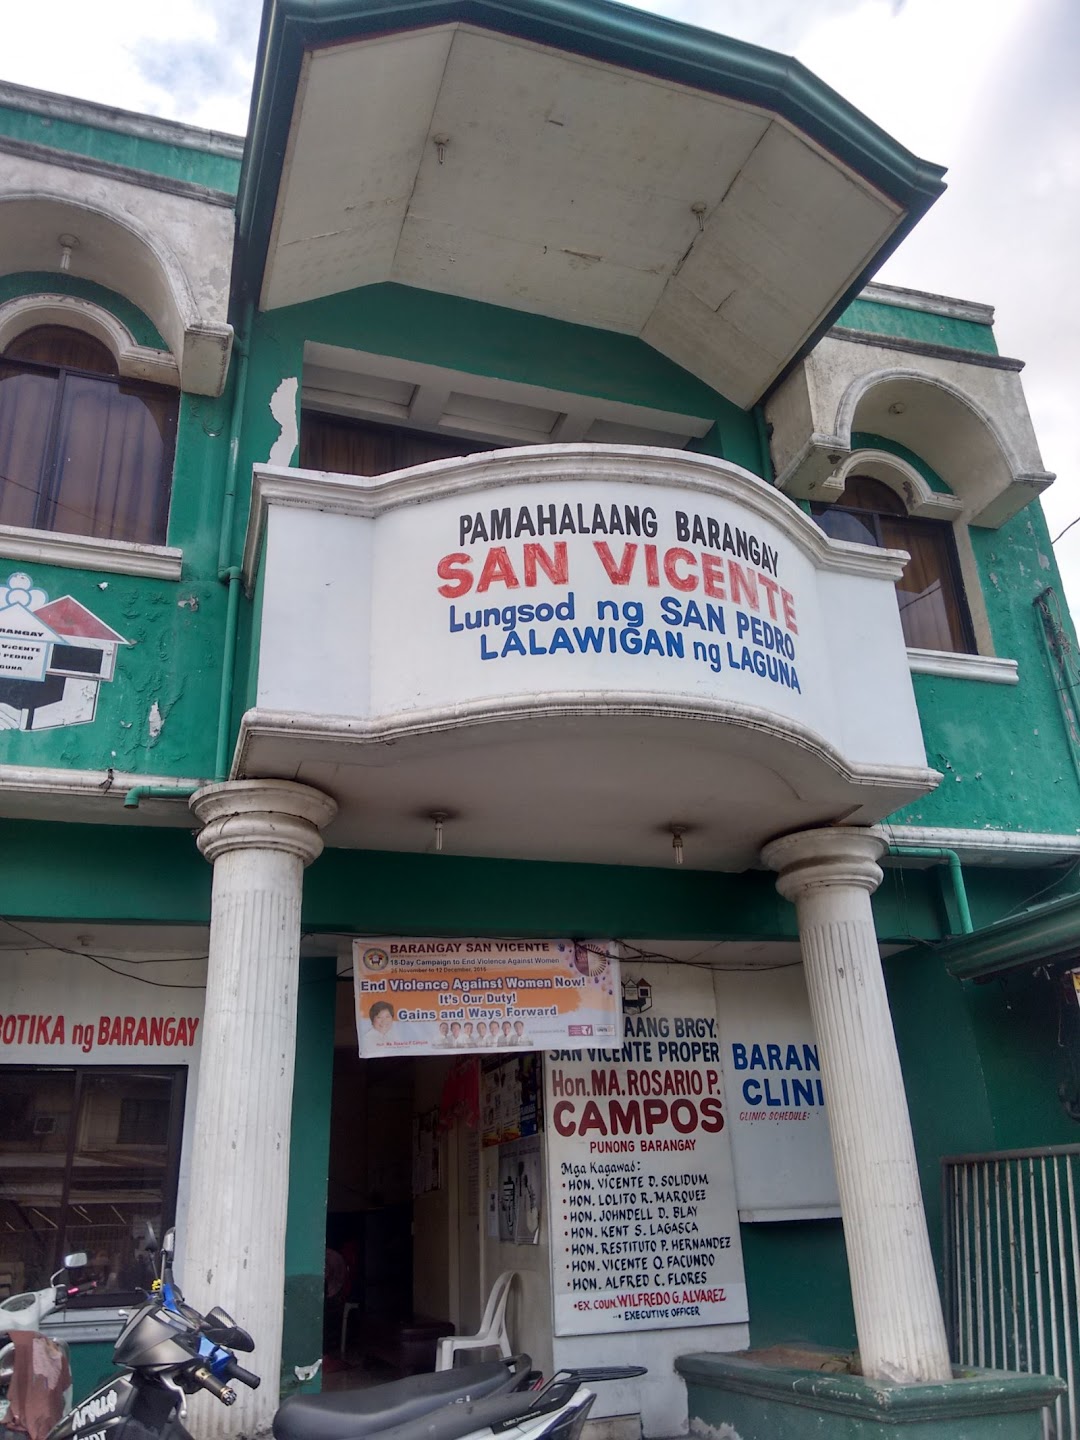 Pamahalaang Barangay San Vicente Lungsod Ng San Oedro Lalawigan Ng Laguna